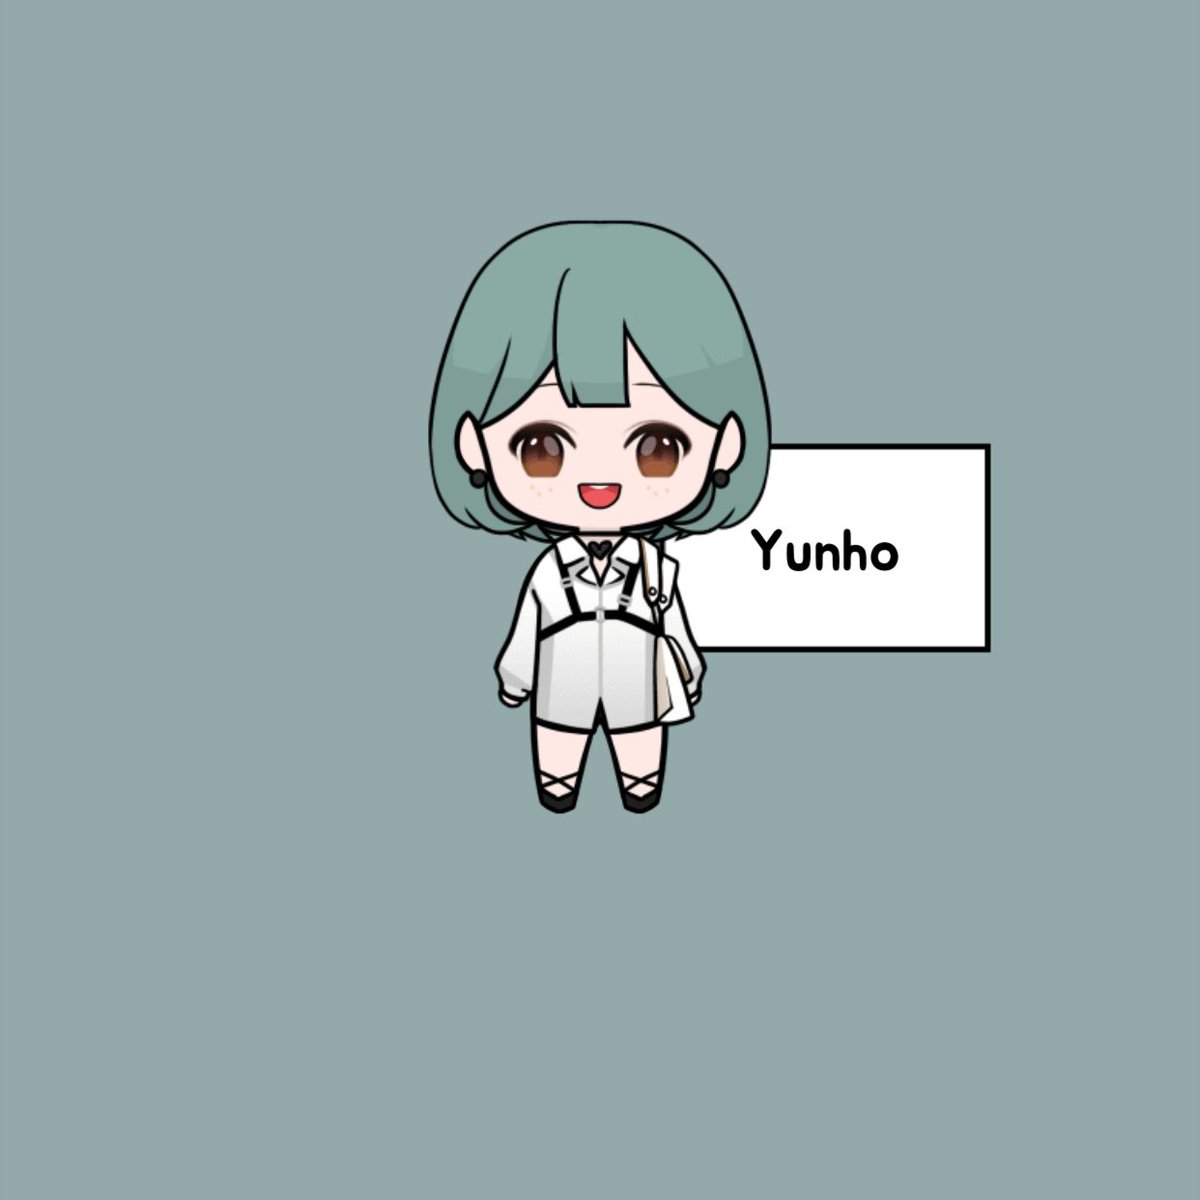 Yunho